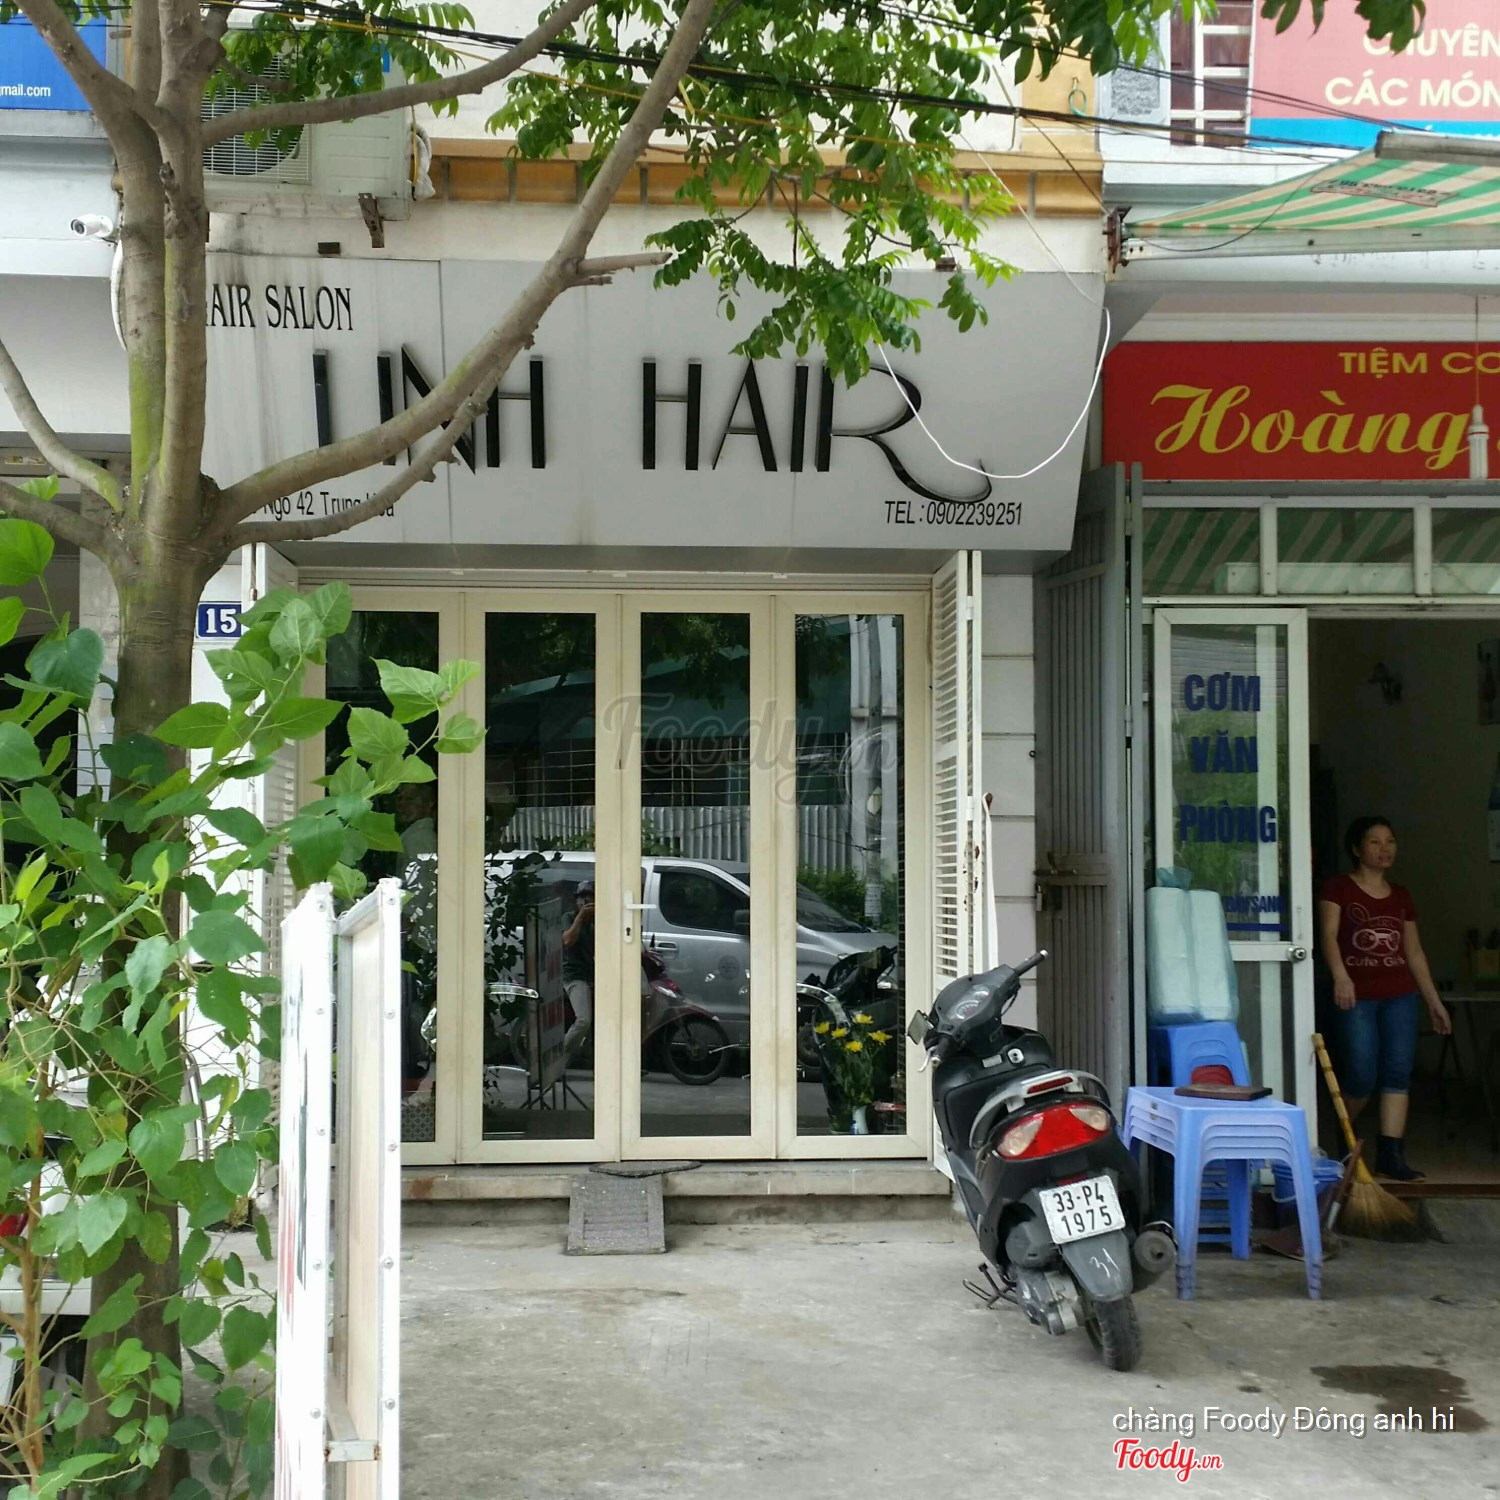 Linh Hair Salon - Trung Hòa ở Quận Cầu Giấy, Hà Nội | Album tổng hợp | Linh  Hair Salon - Trung Hòa 